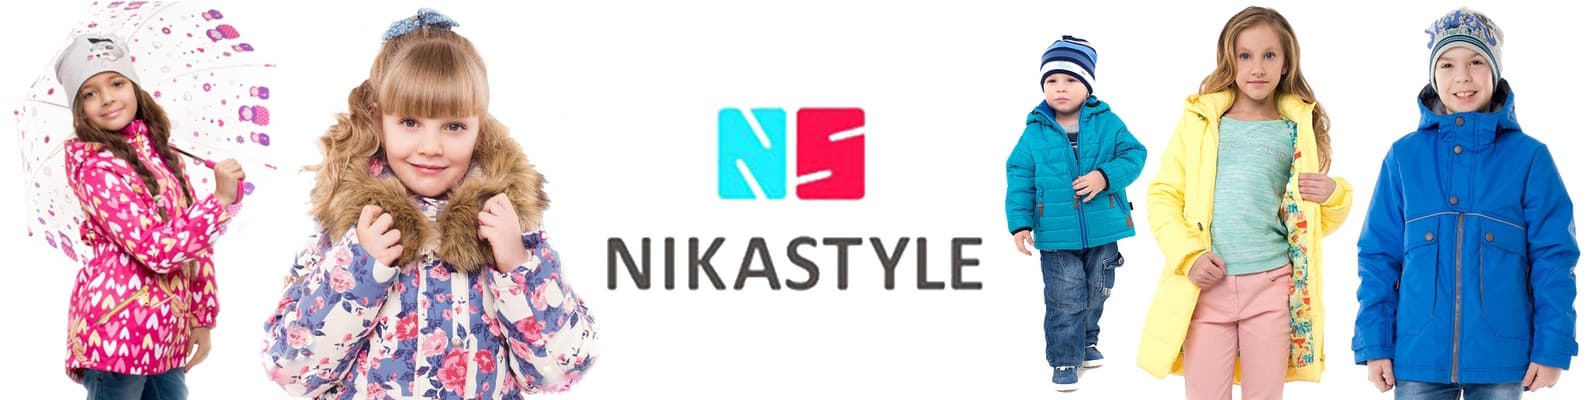 Nikastyle Детская Одежда Интернет Магазин